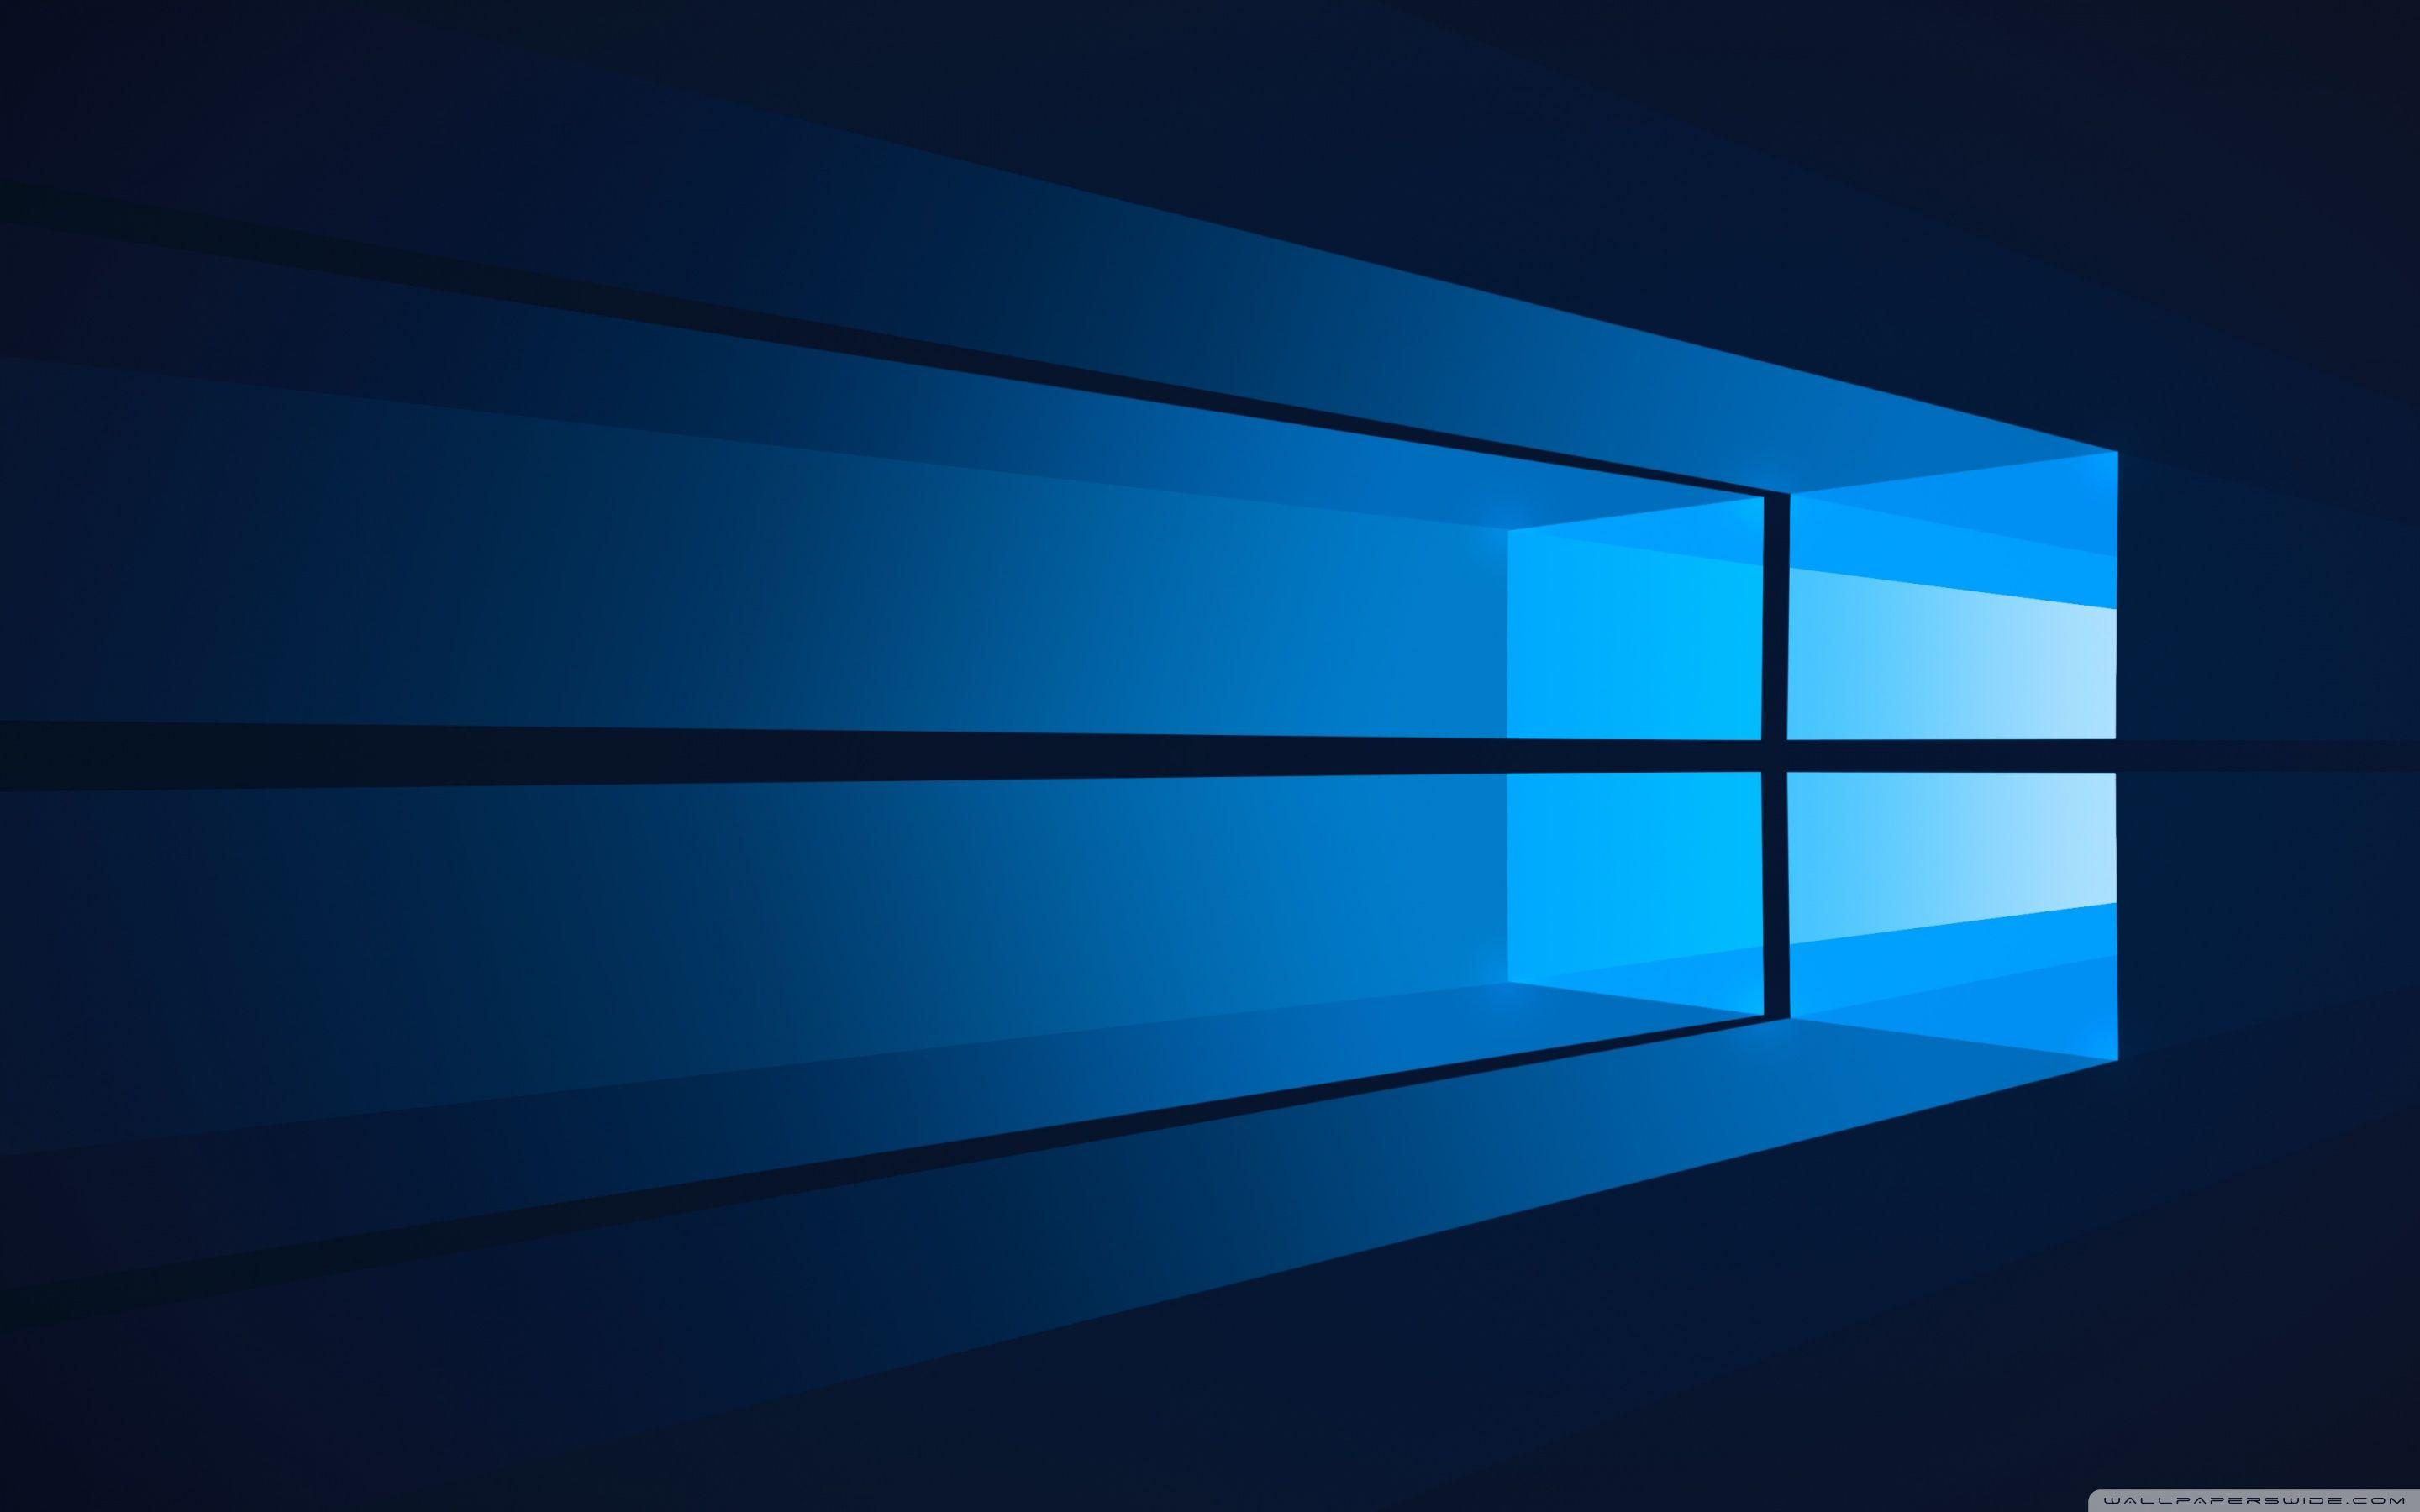 Flat Windows 10 ❤ 4K HD Desktop Wallpaper for • Wide & Ultra